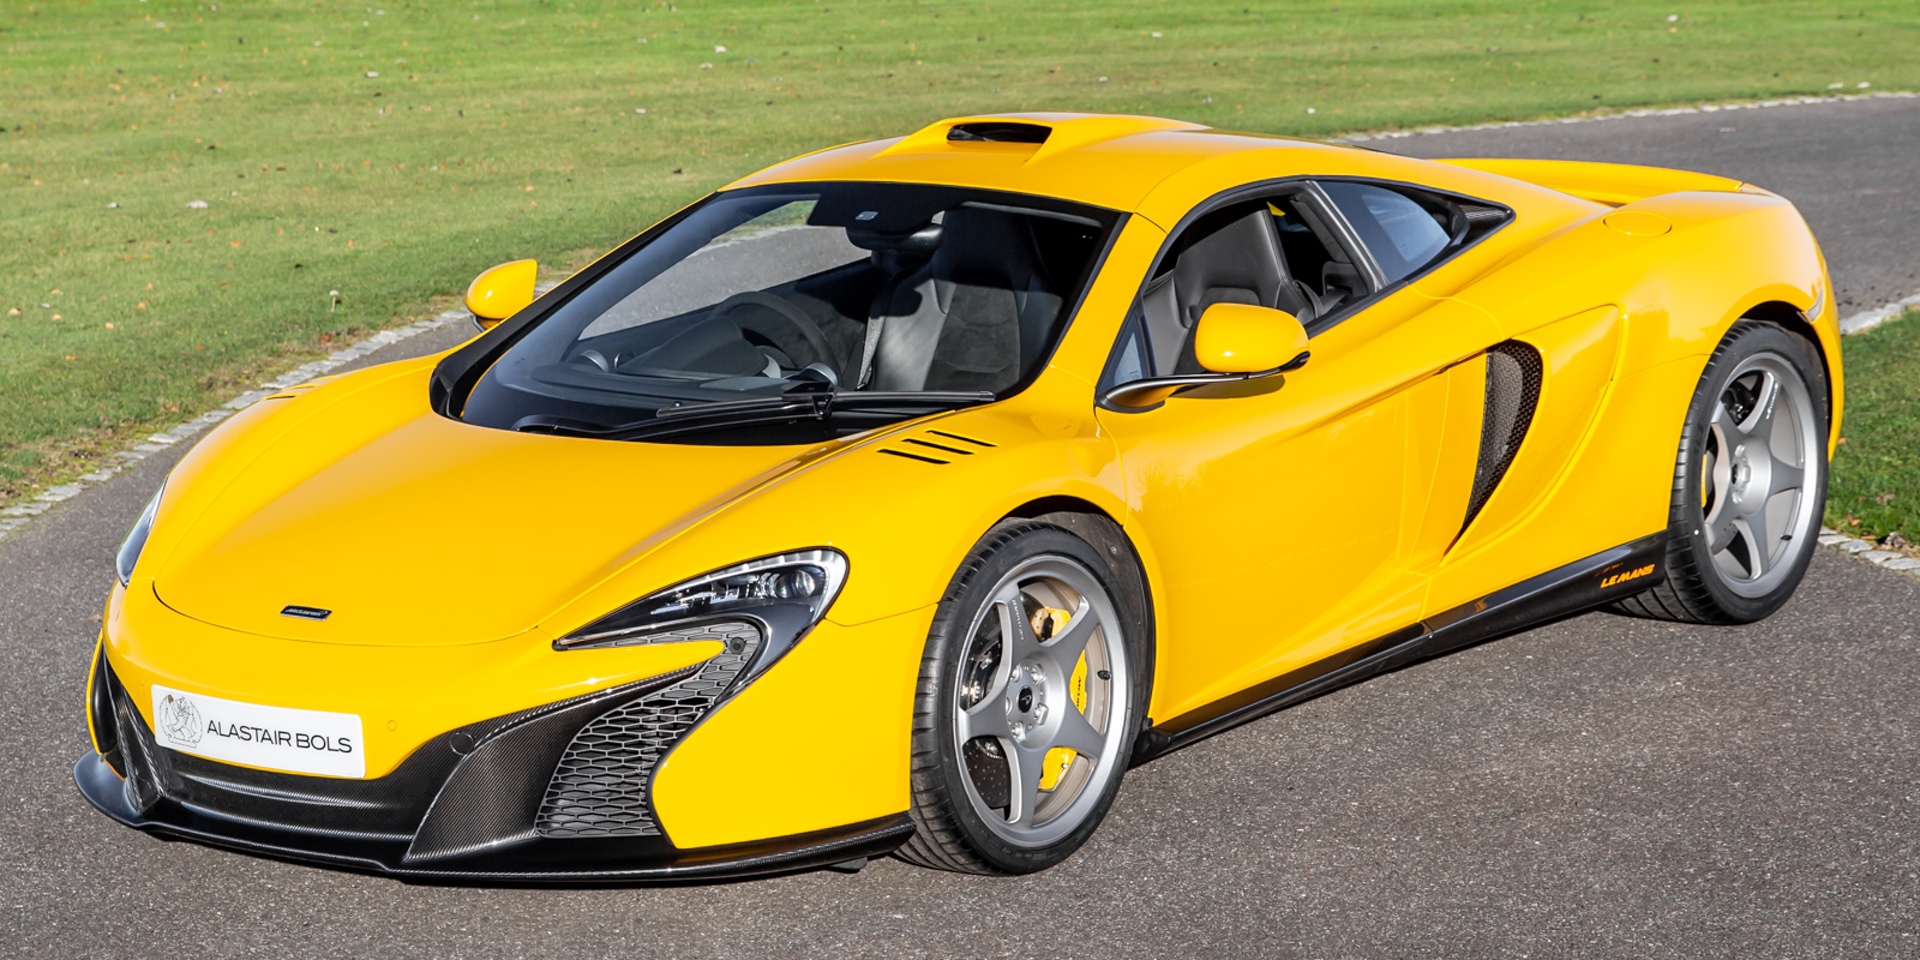 McLaren_650S_Le_Mans_yellow_sale-0000